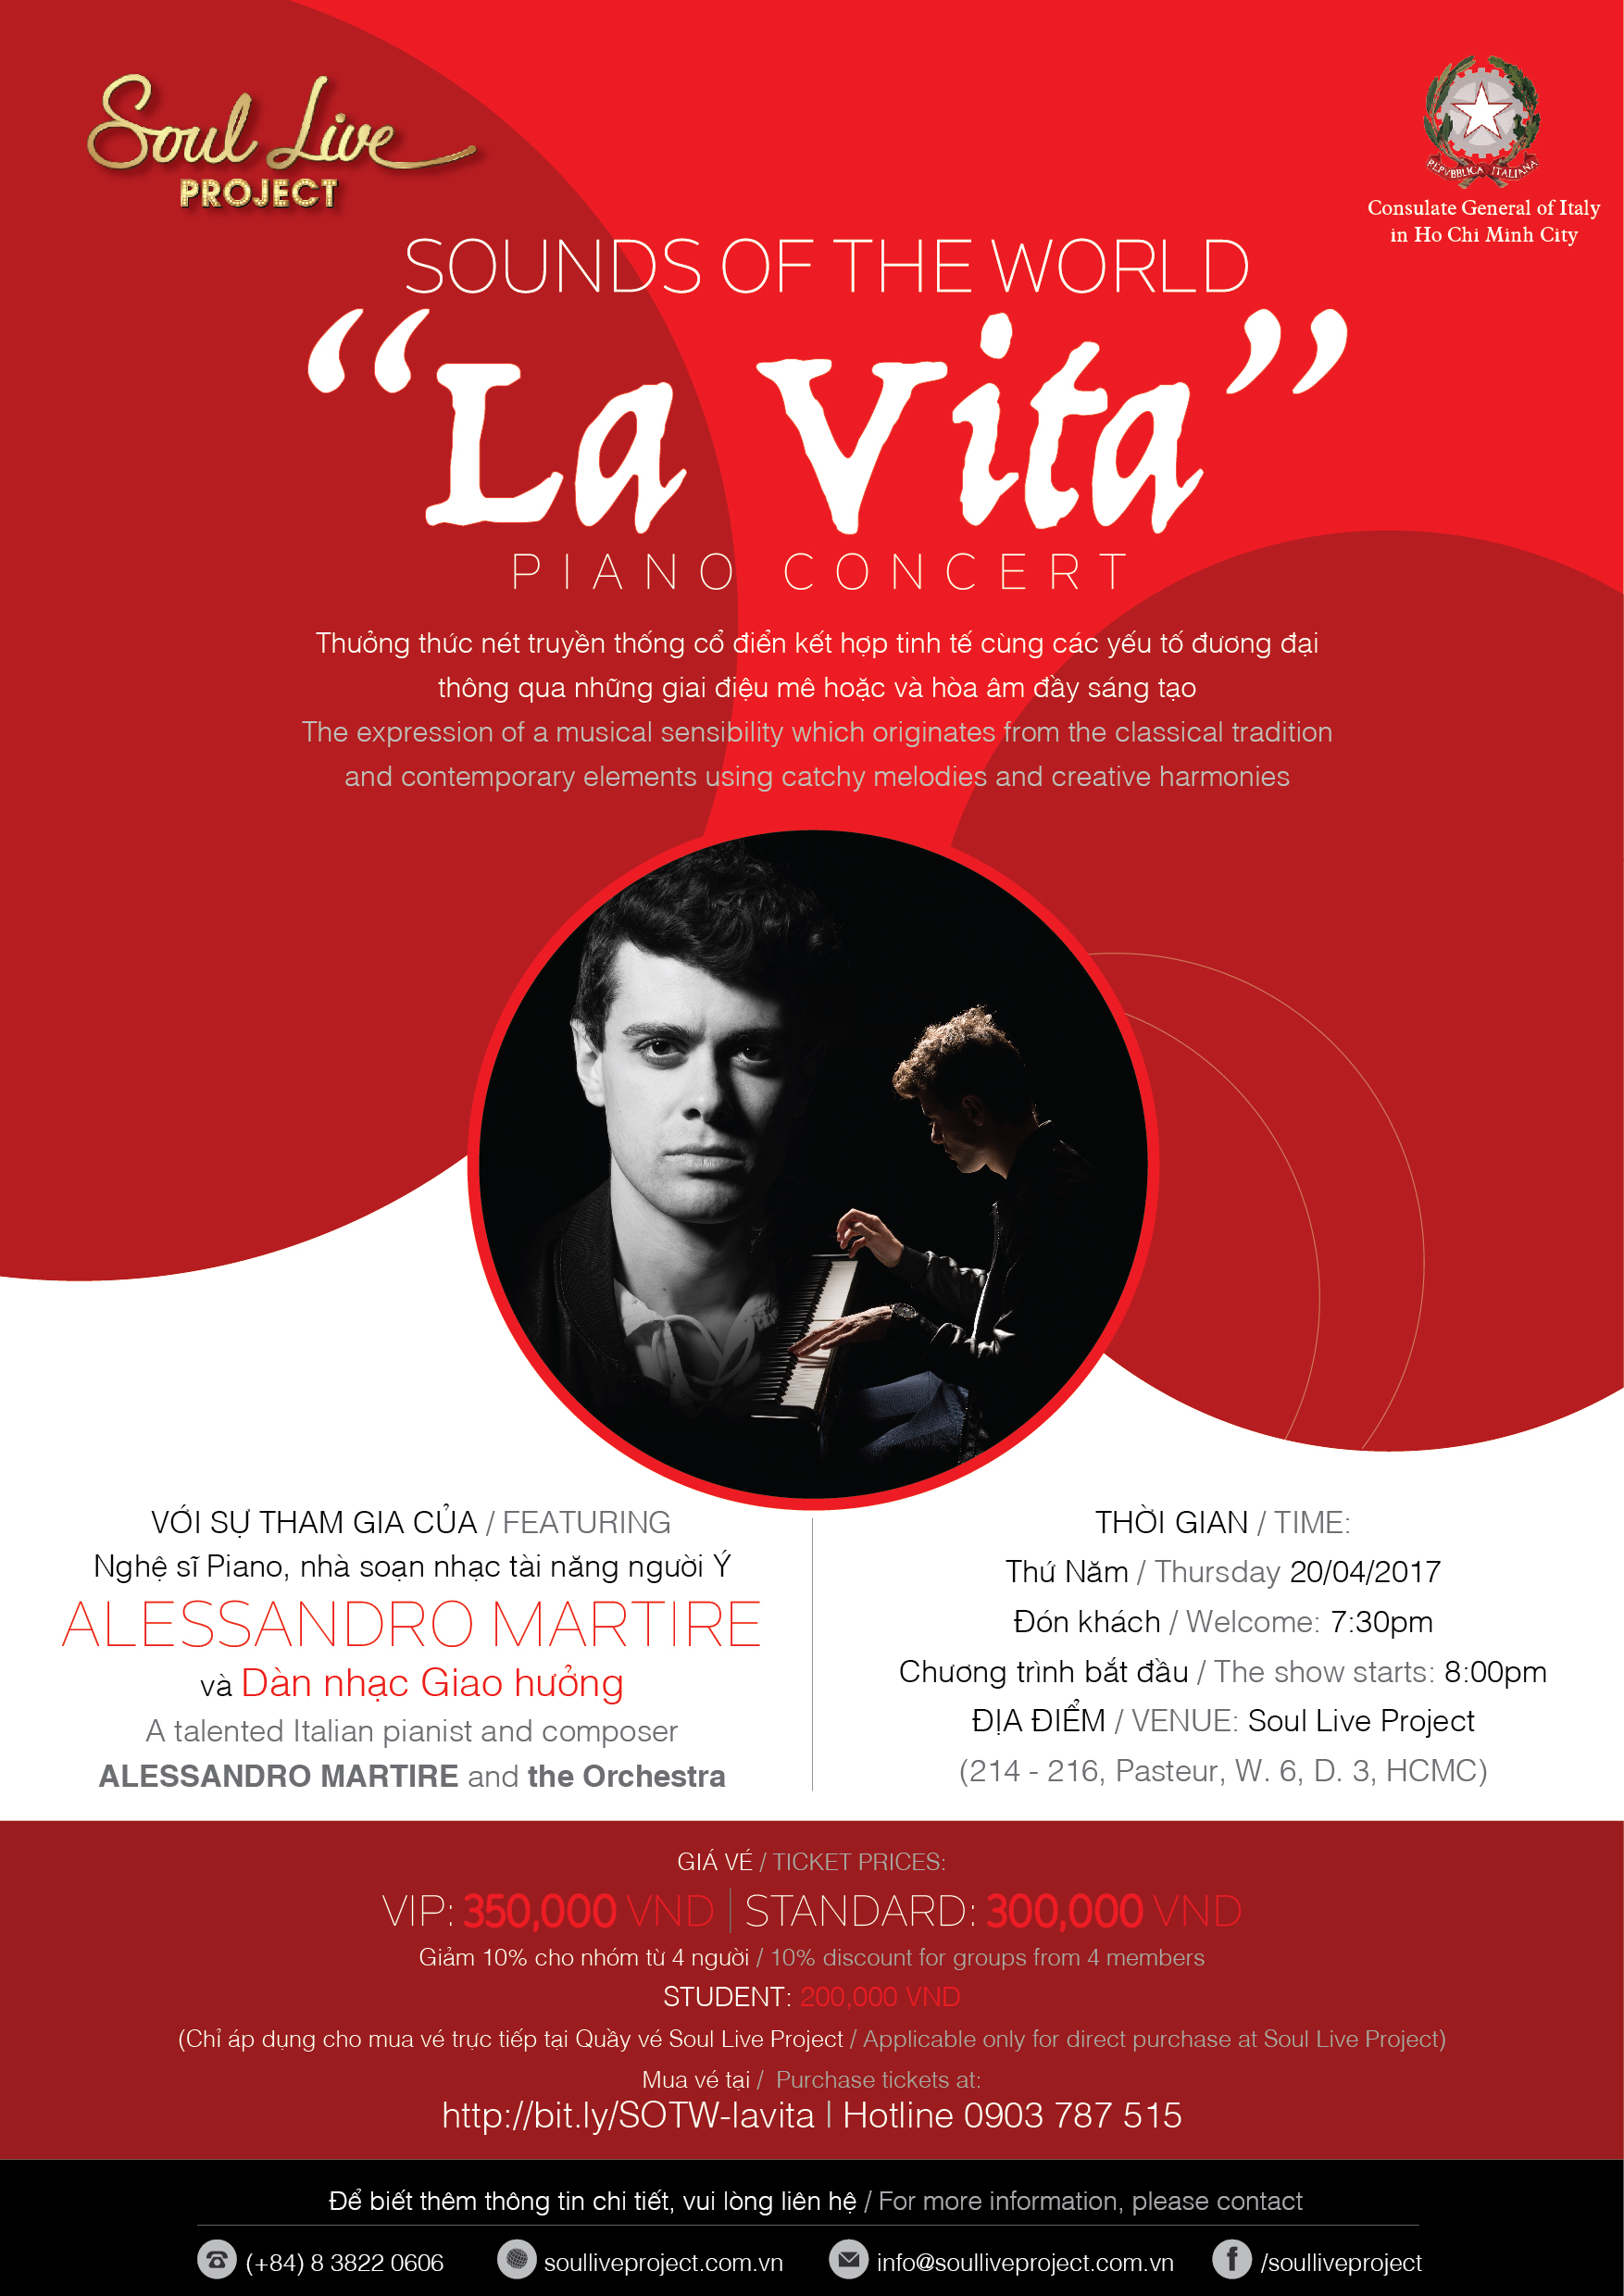 Alessandro Martire – nghệ sĩ piano tài hoa người Ý đến Việt Nam biểu diễn một đêm duy nhất!